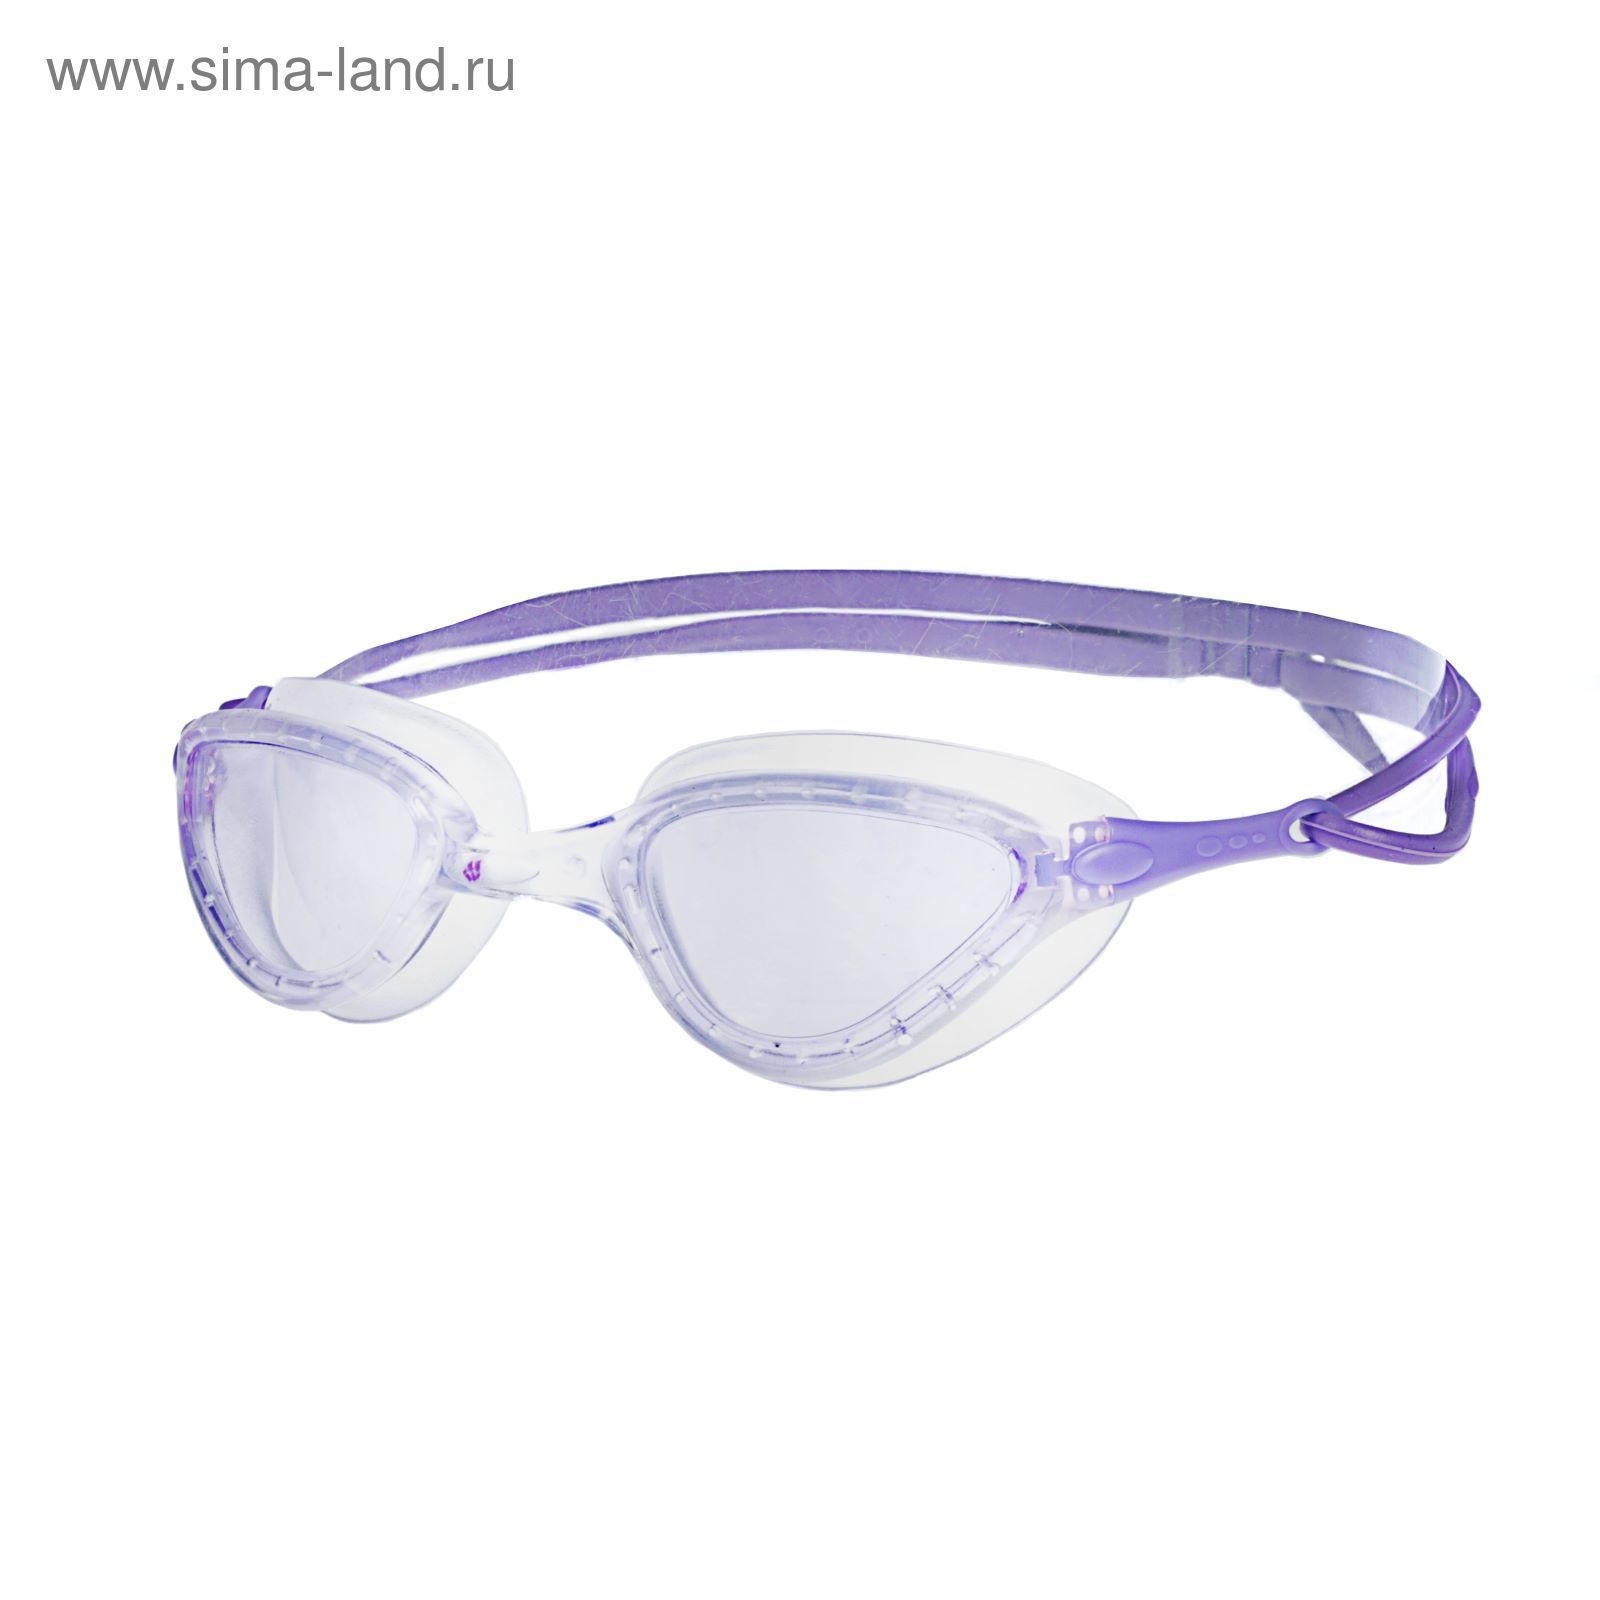 Очки для плавания FIT, Violet M0426 11 0 09W